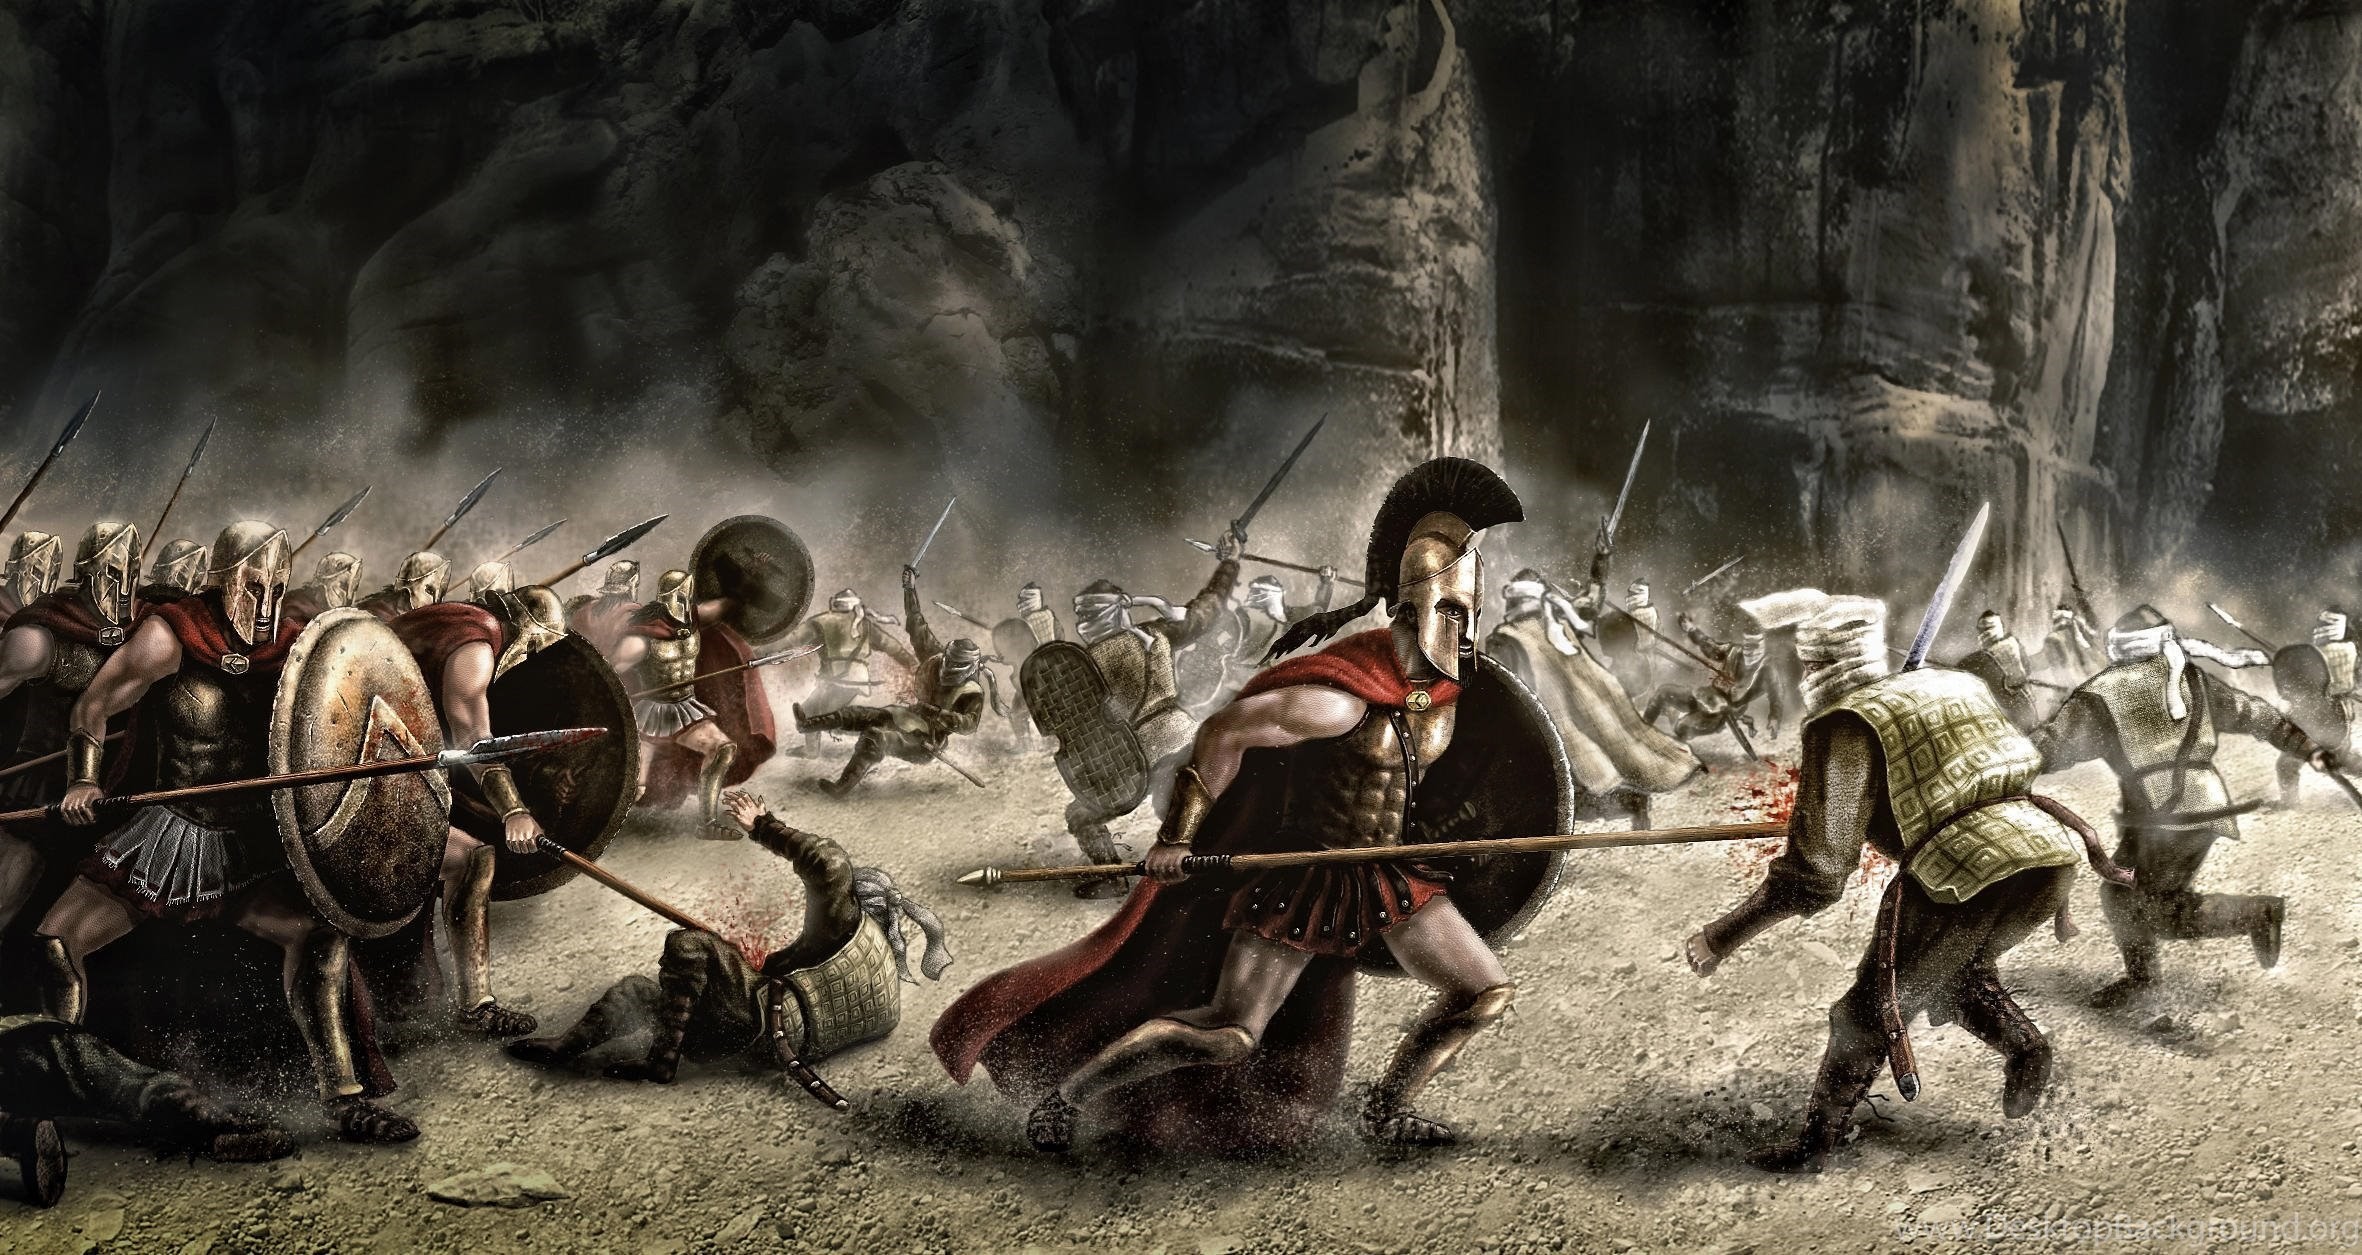 Сильнейших воинов истории. Фермопильское сражение 300 спартанцев. 300 Спартанцев в Фермопилах. Армия персов 300 спартанцев. 300 Спартанцев бой.